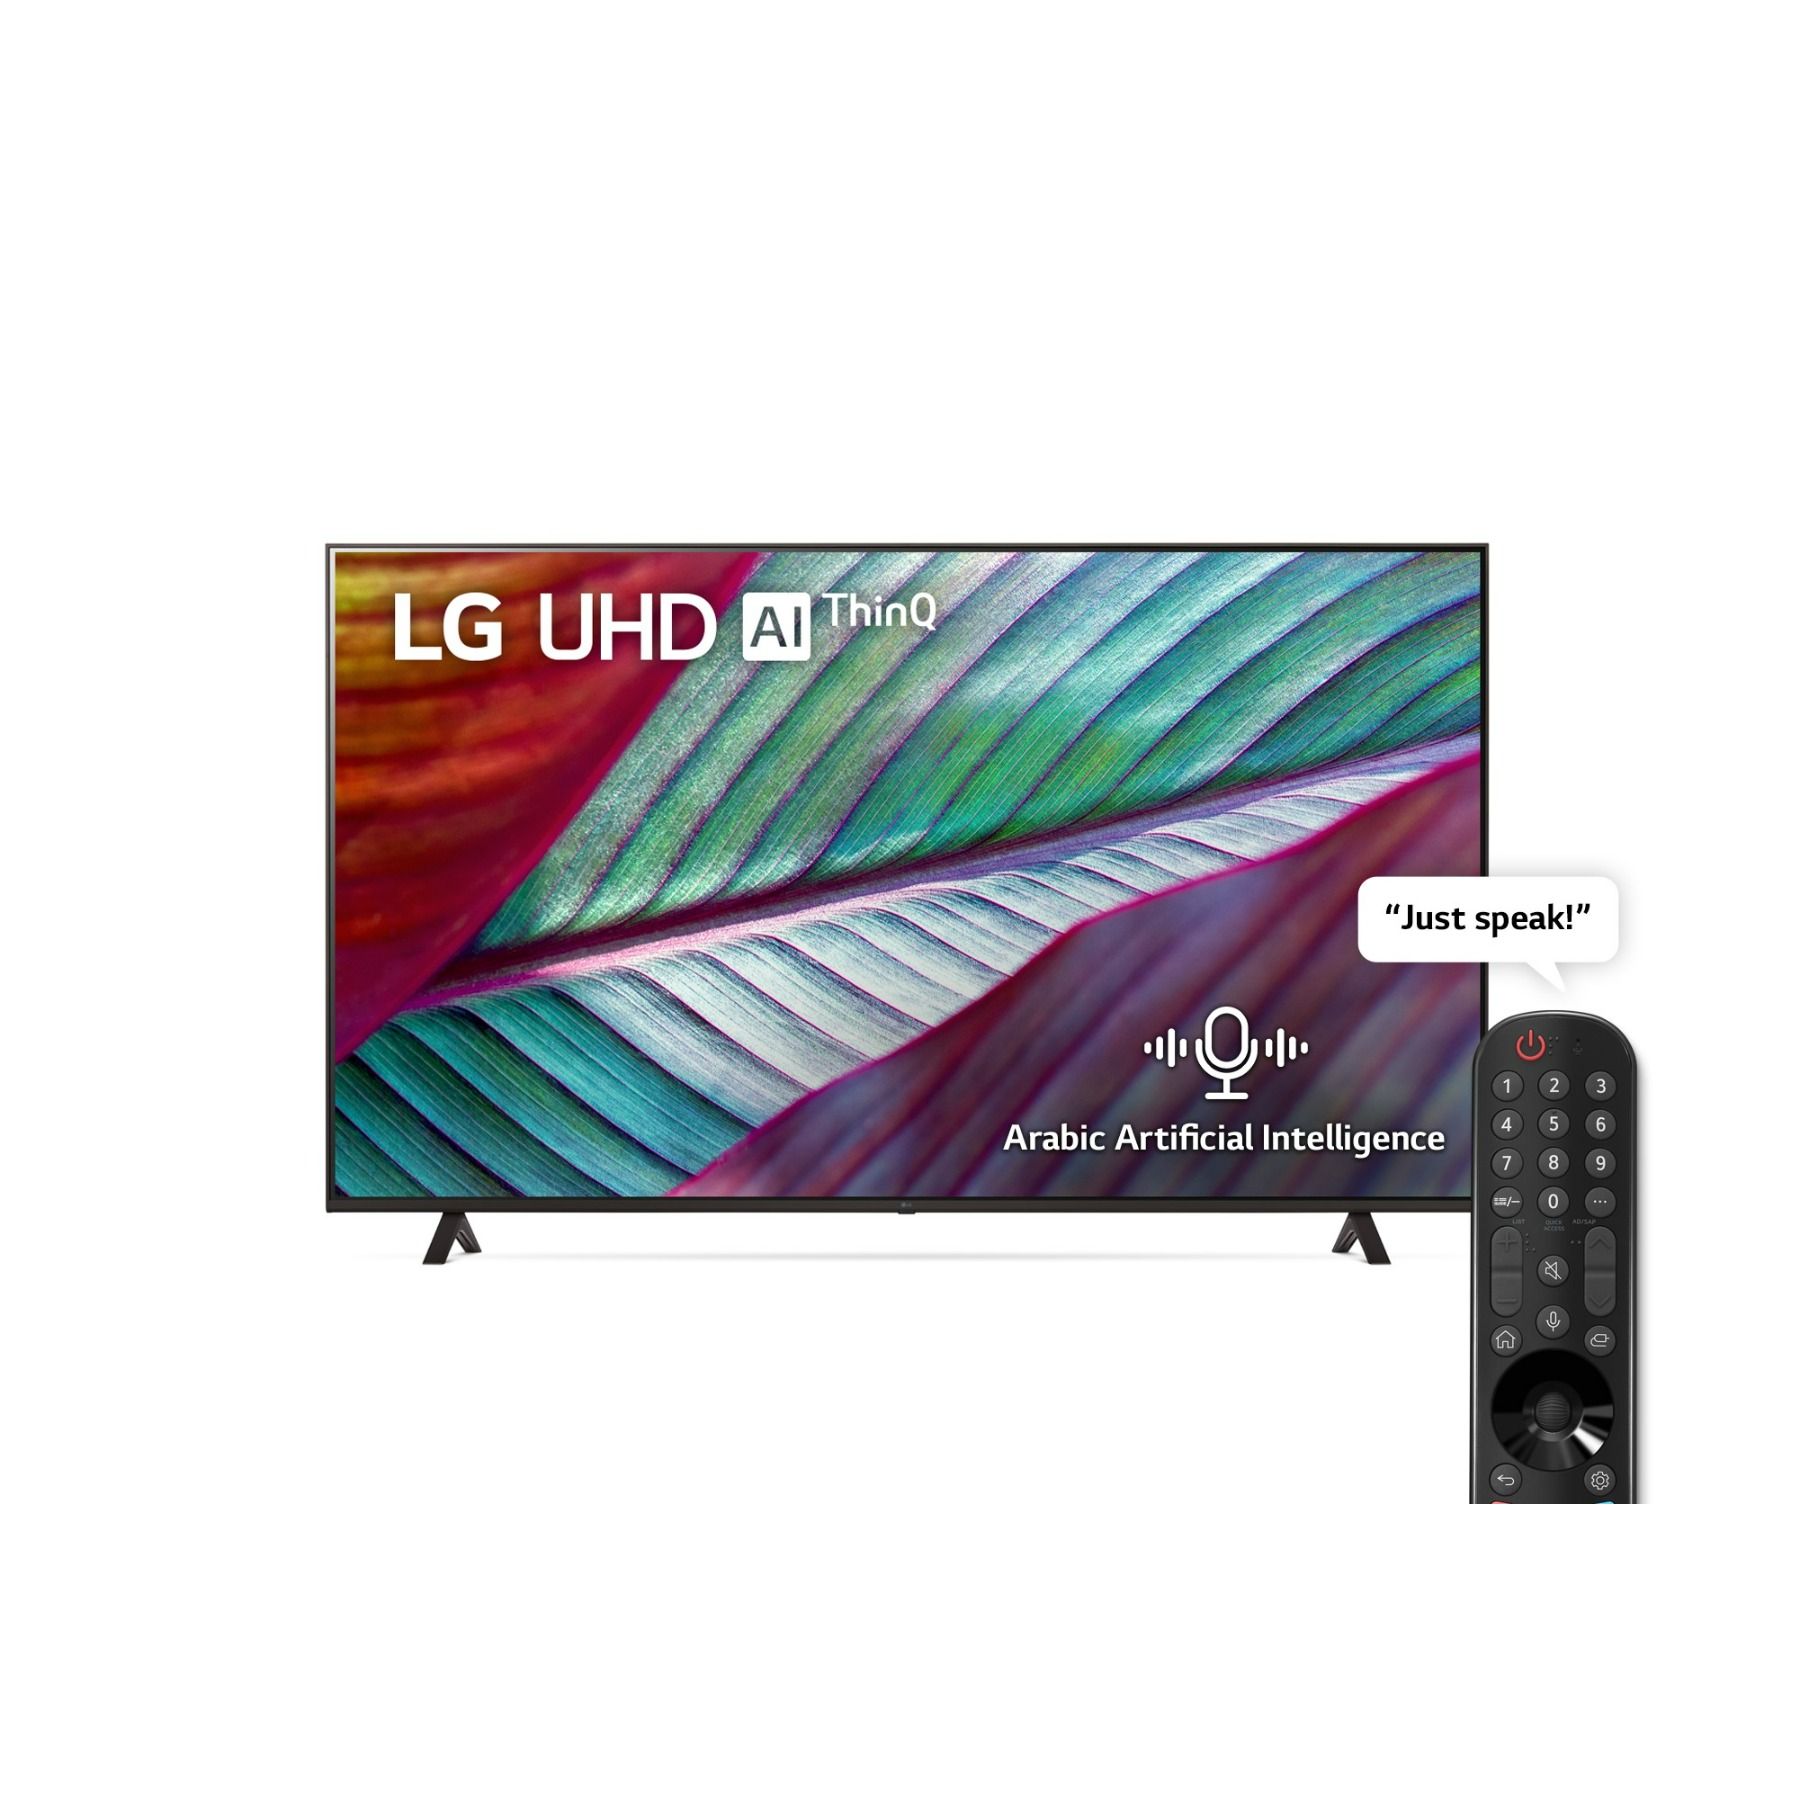 LG TV 55 LED 4K Smart